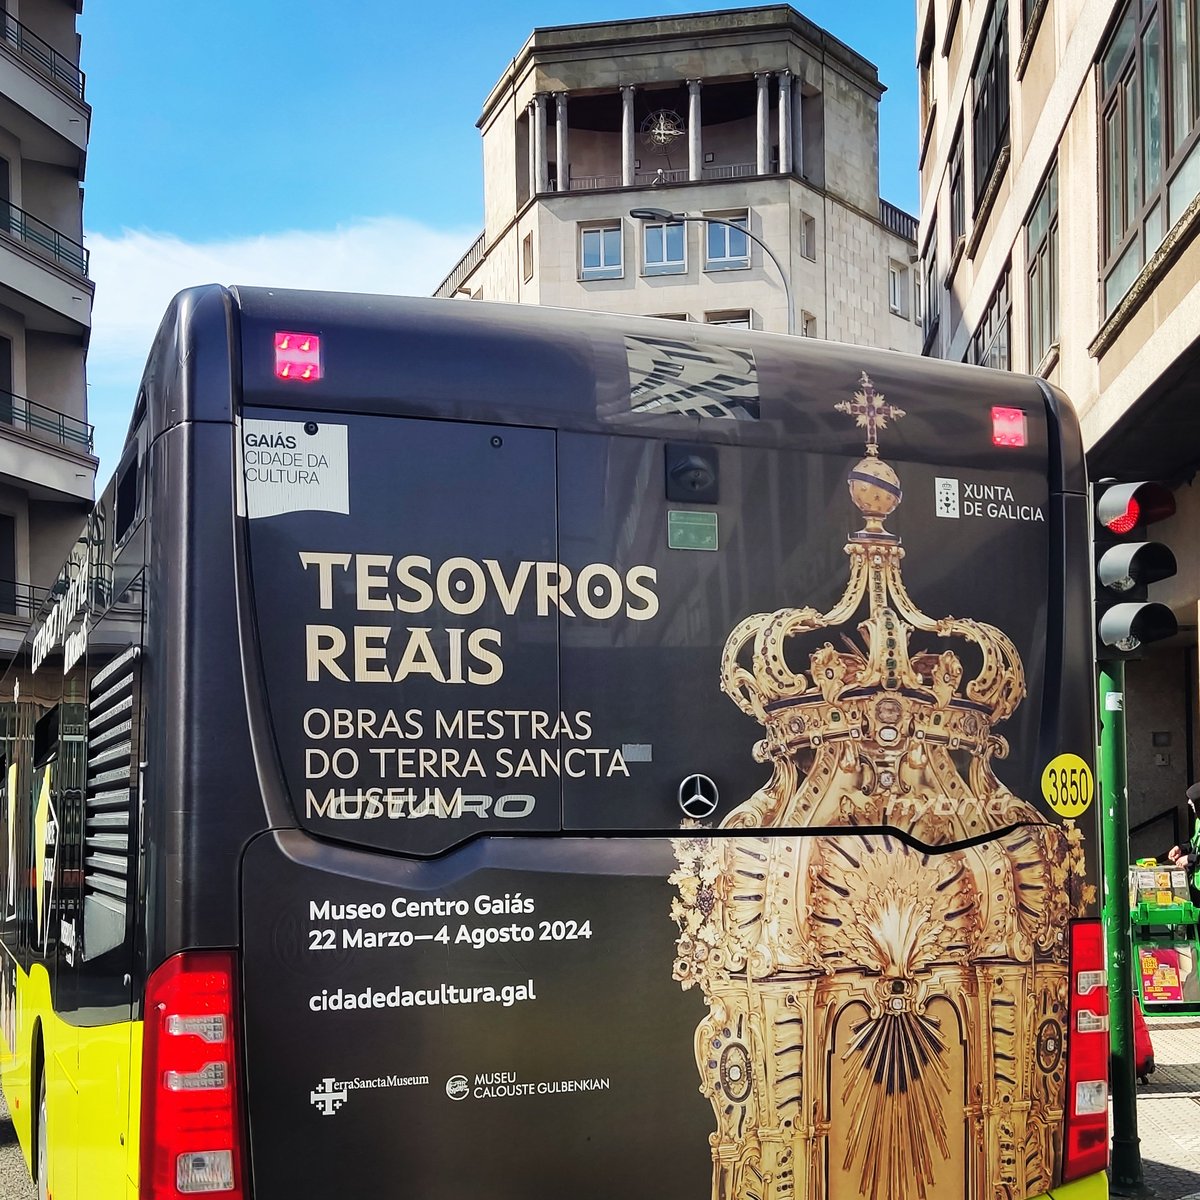 #TesourosReais
#MuseoGaiás
#CidadeDaCultura #SantiagodeCompostela #PublicidadExterior #AutobusesUrbanos #YagosPublicidad
#LaBuenaPublicidad
#ooh